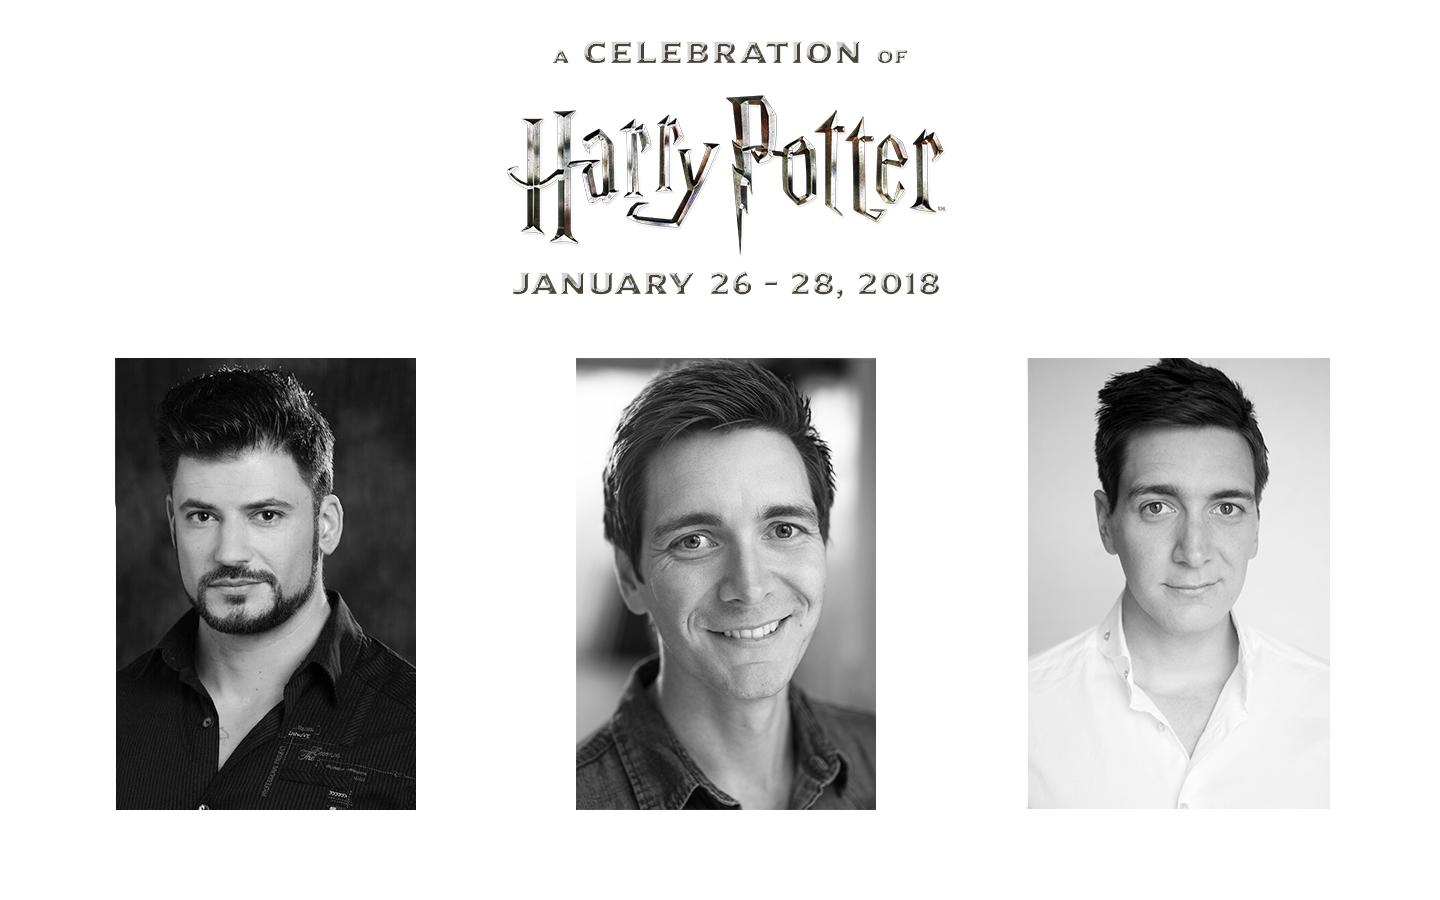 A Celebration of Harry Potter Returns Jan 26 - 28